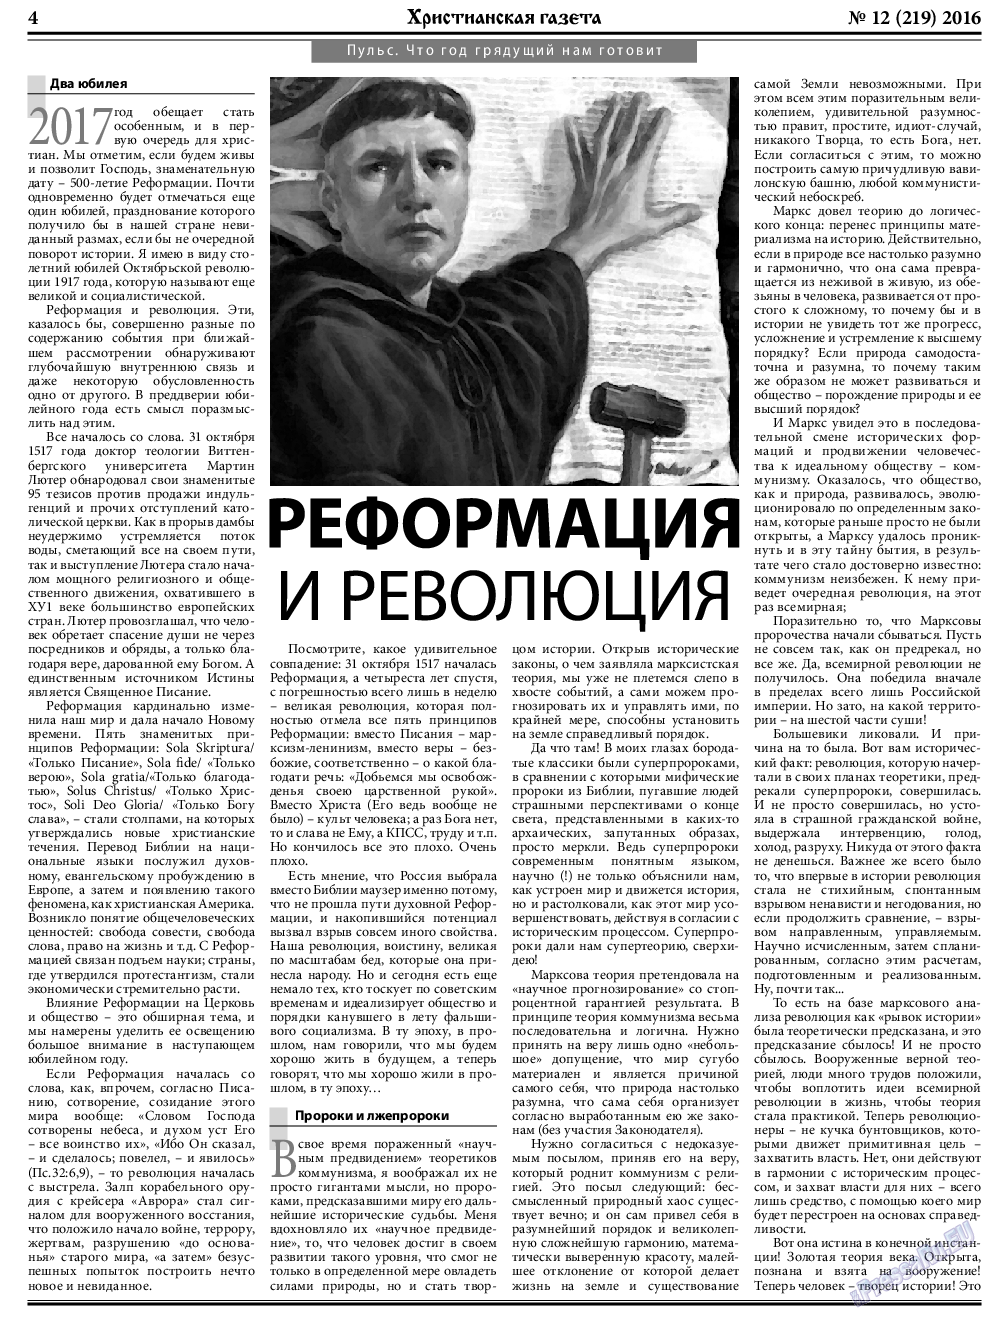 Христианская газета, газета. 2016 №12 стр.4